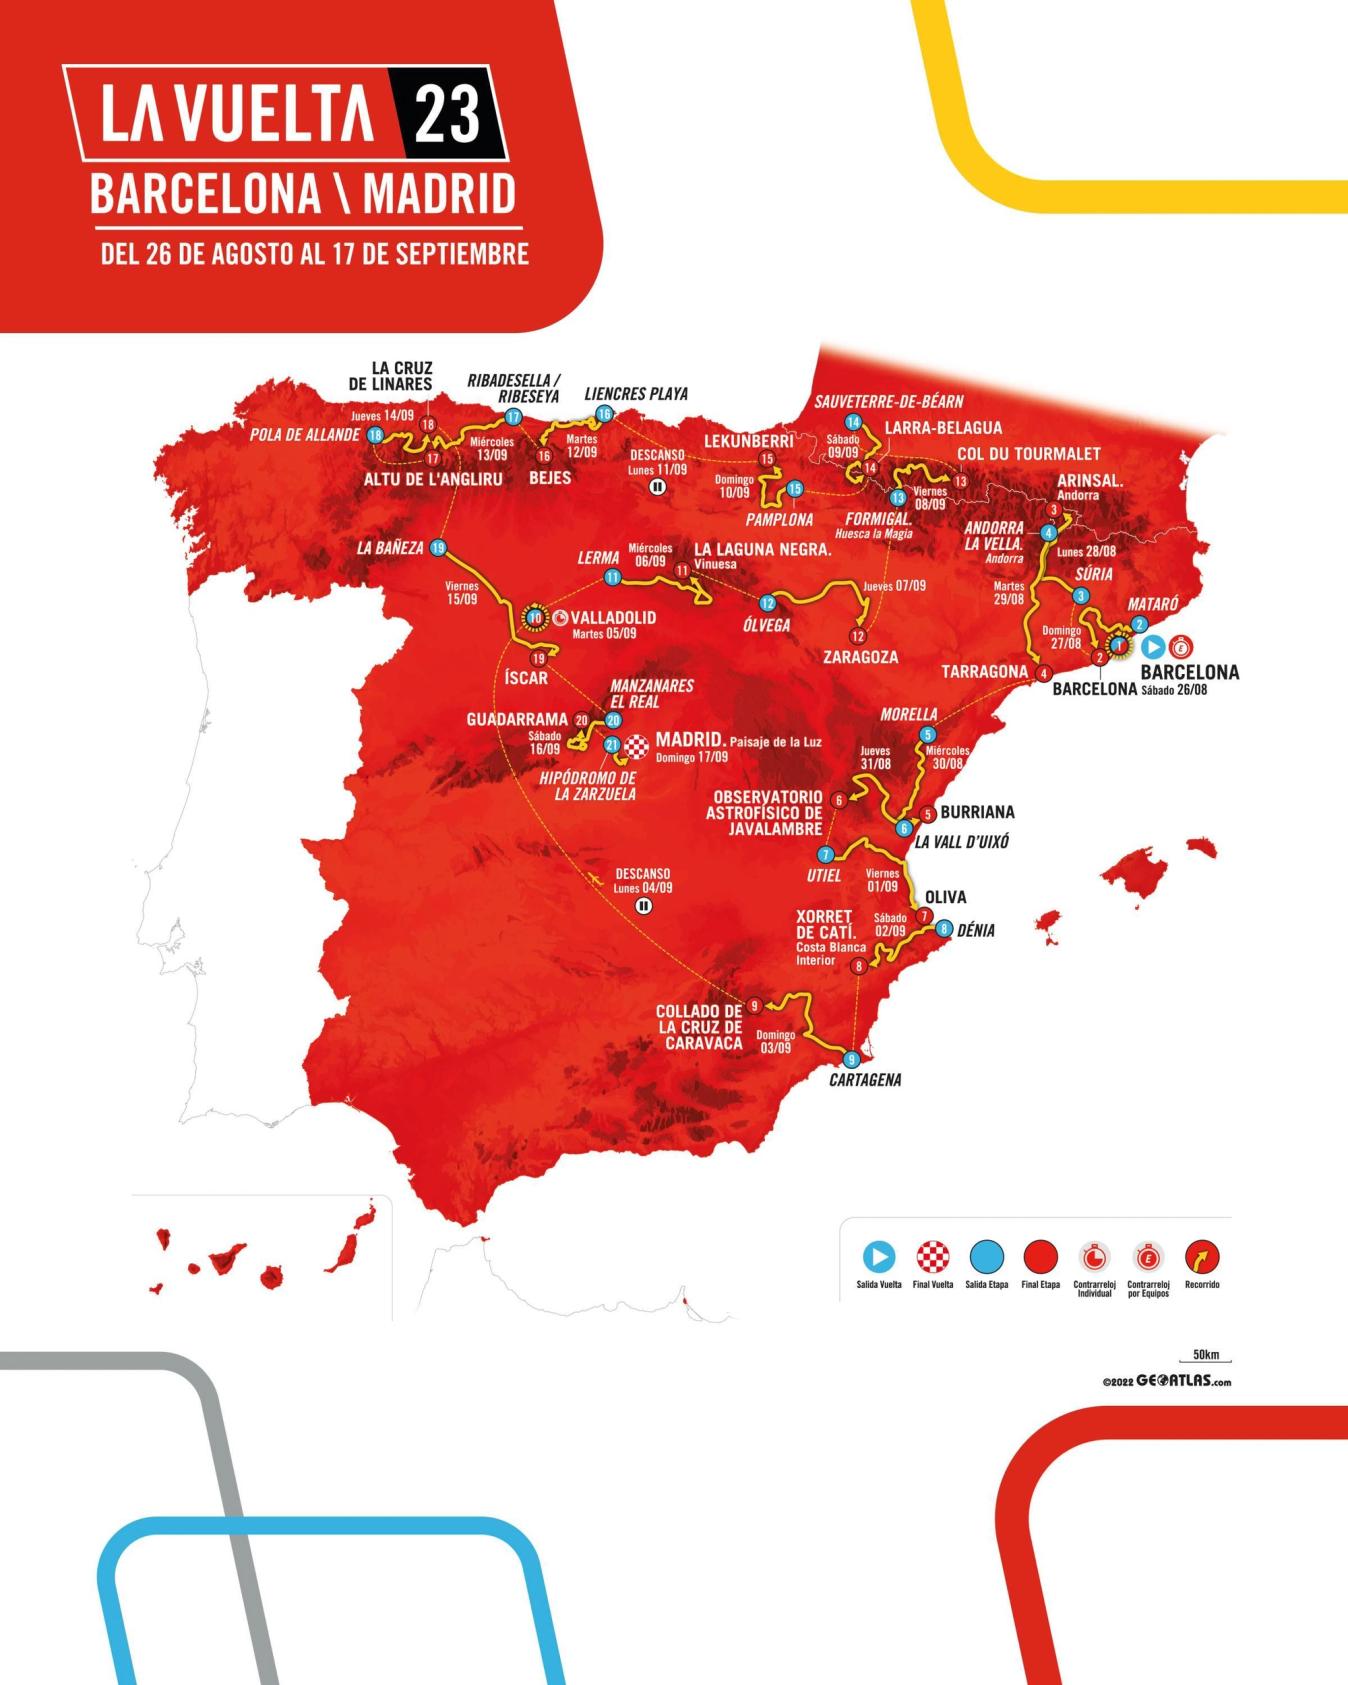 The route for the 2023 Vuelta a España